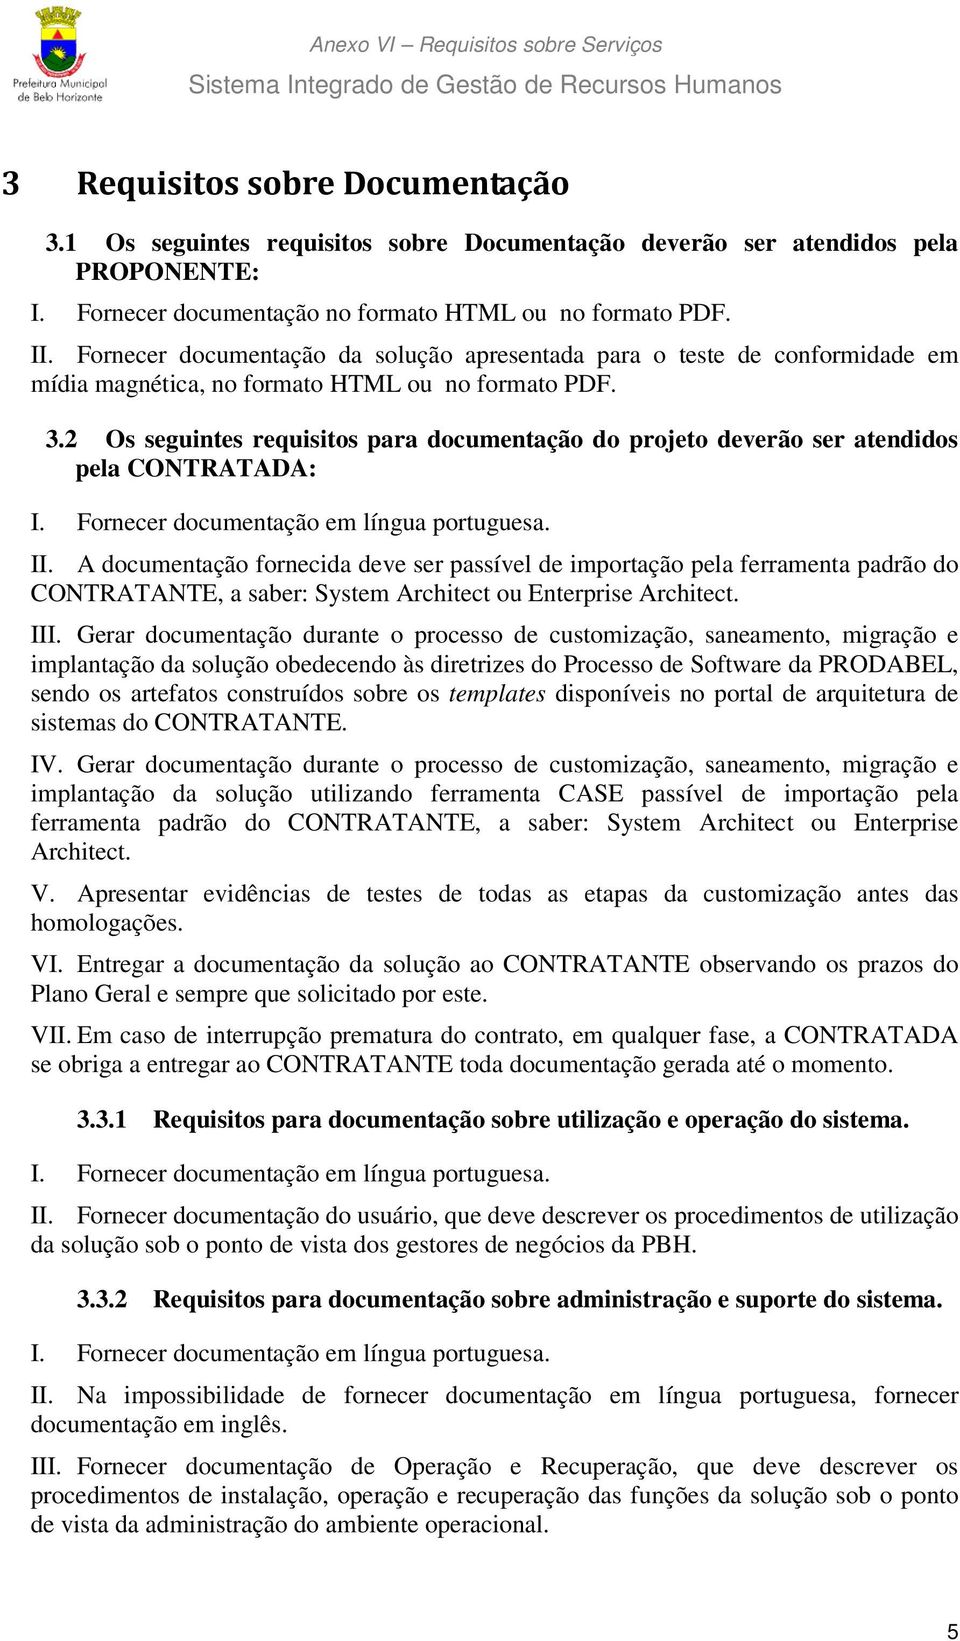 2 Os seguintes requisitos para documentação do projeto deverão ser atendidos pela CONTRATADA: I. Fornecer documentação em língua portuguesa. II.